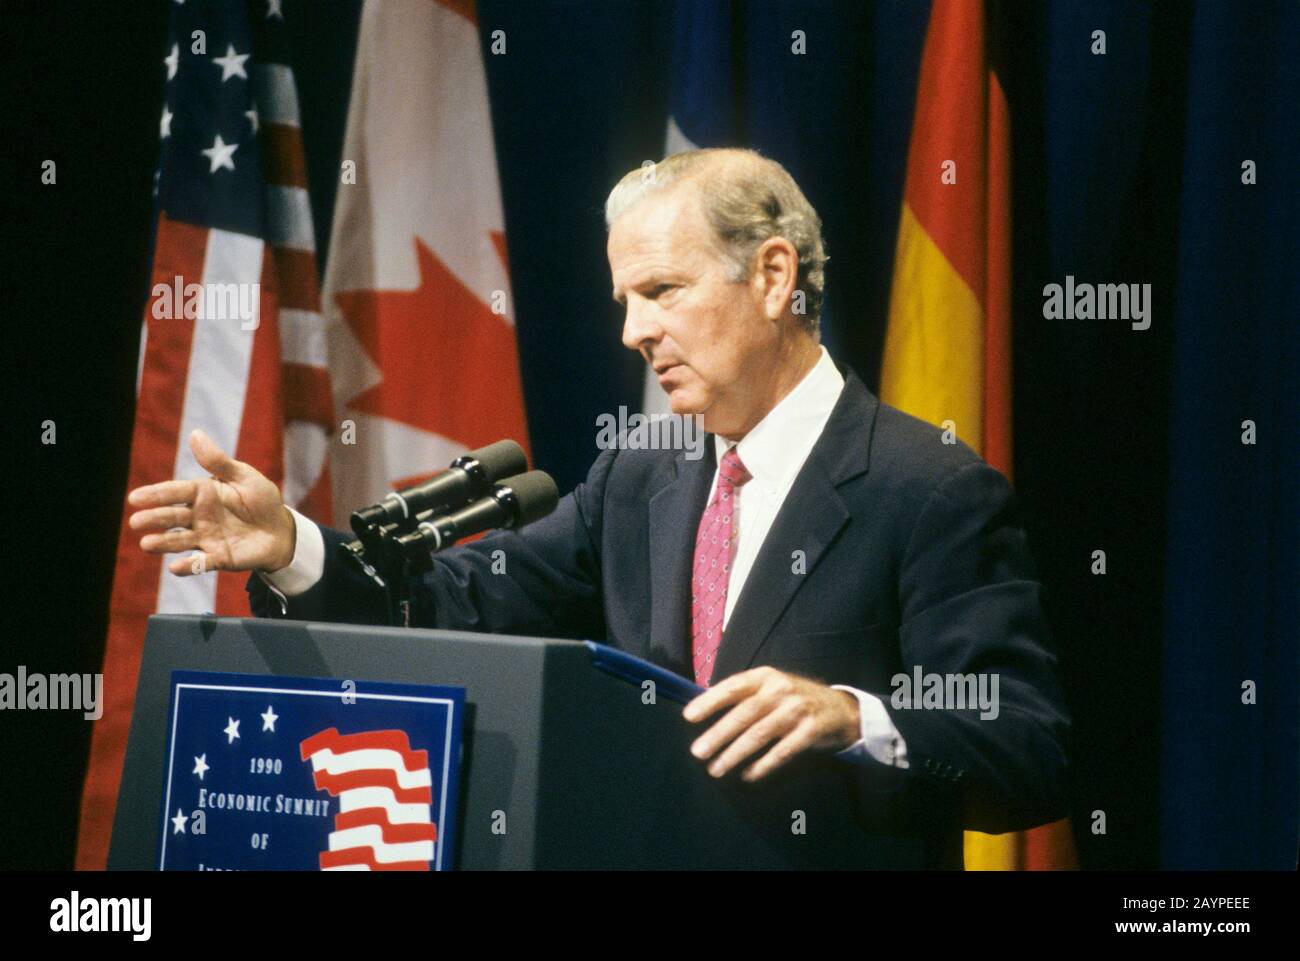 Juni 1990, Houston Texas USA: Staatssekretär James Baker bei einer Pressekonferenz während Präs. George H.W. Bushs G7-Wirtschaftsgipfel. ©Bob Daemmrich Stockfoto